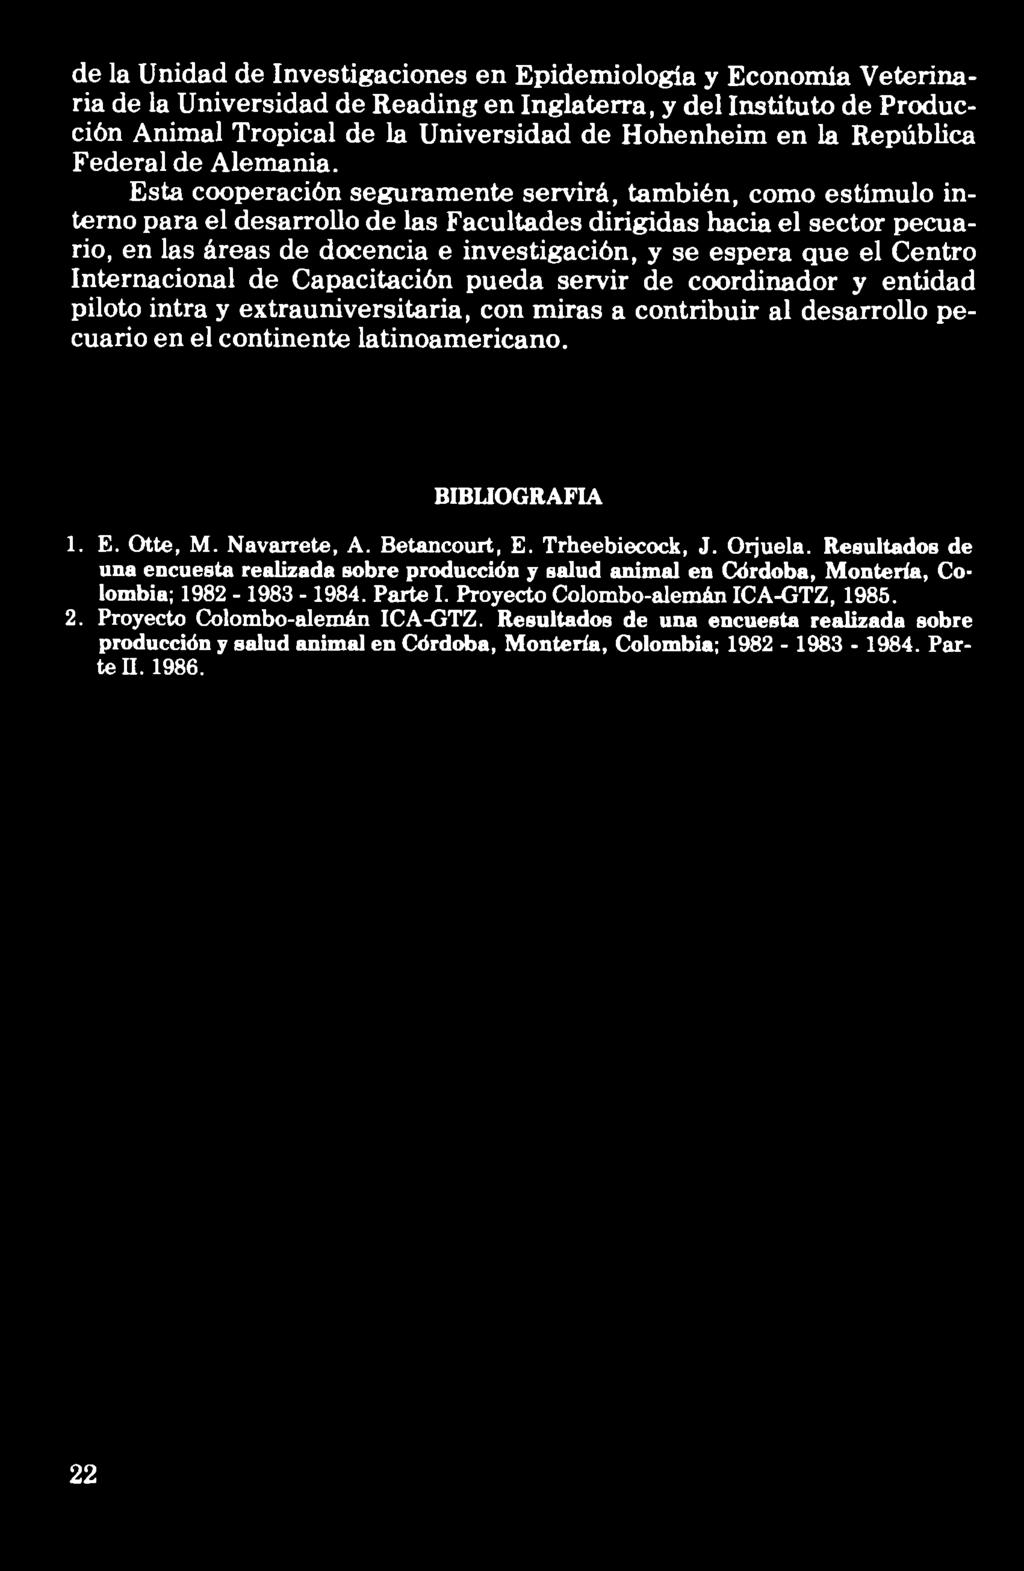 desarrollo pecuario en el continente latinoamericano. BIBLIOGRAFIA 1. E. Otte, M. Navarrete, A. Betancourt, E. Trheebiecock, J. Orjuela.